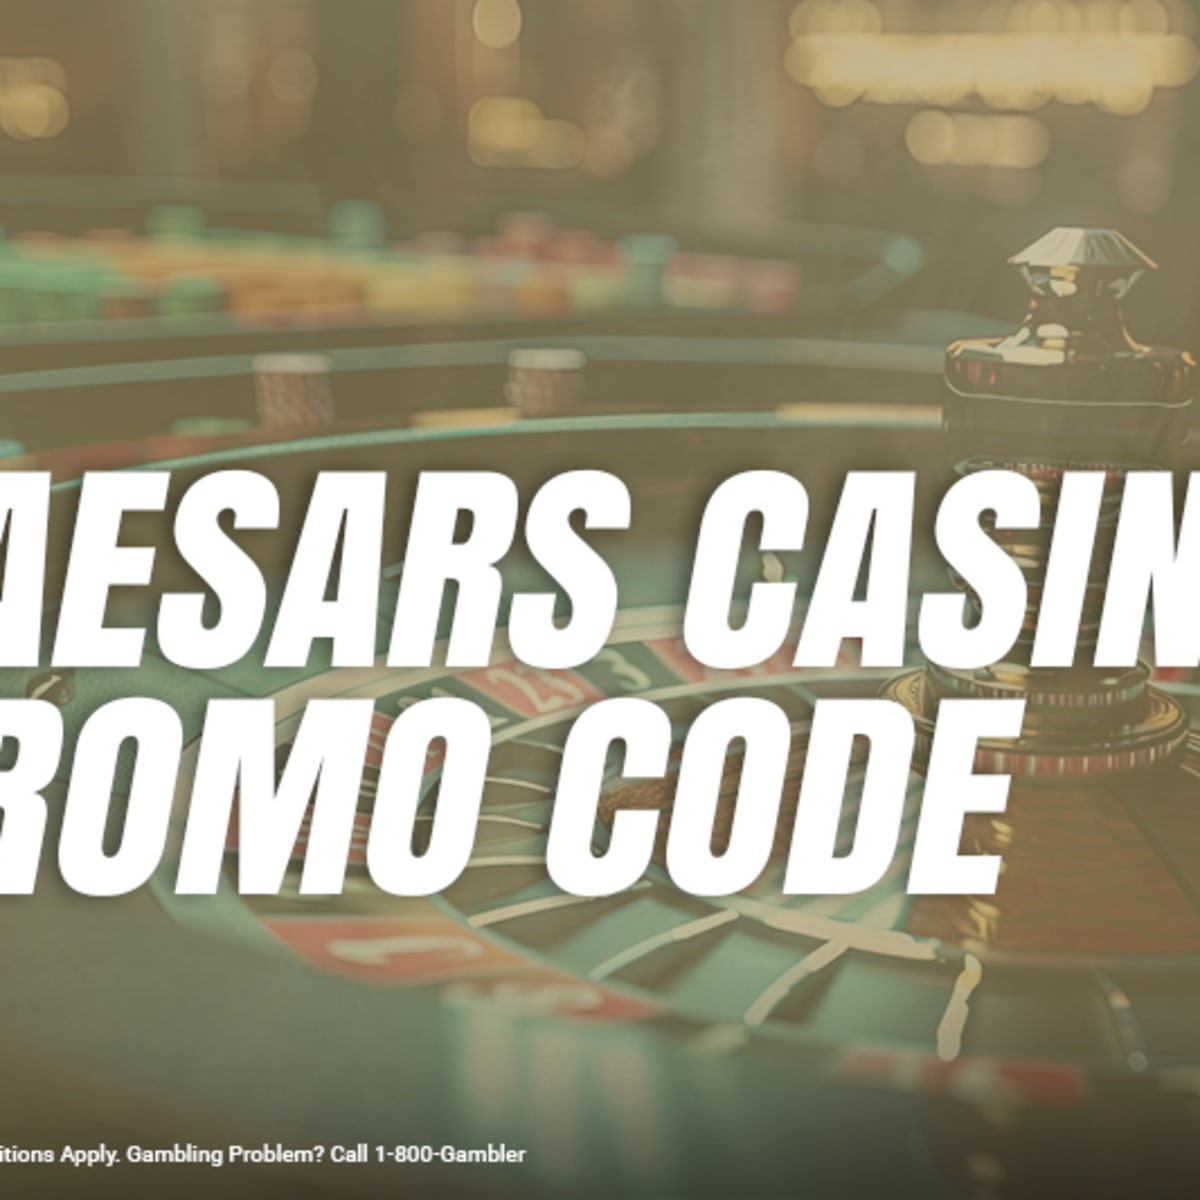 Caesars Slots: Play Free Slots - 100,000 Free Coins